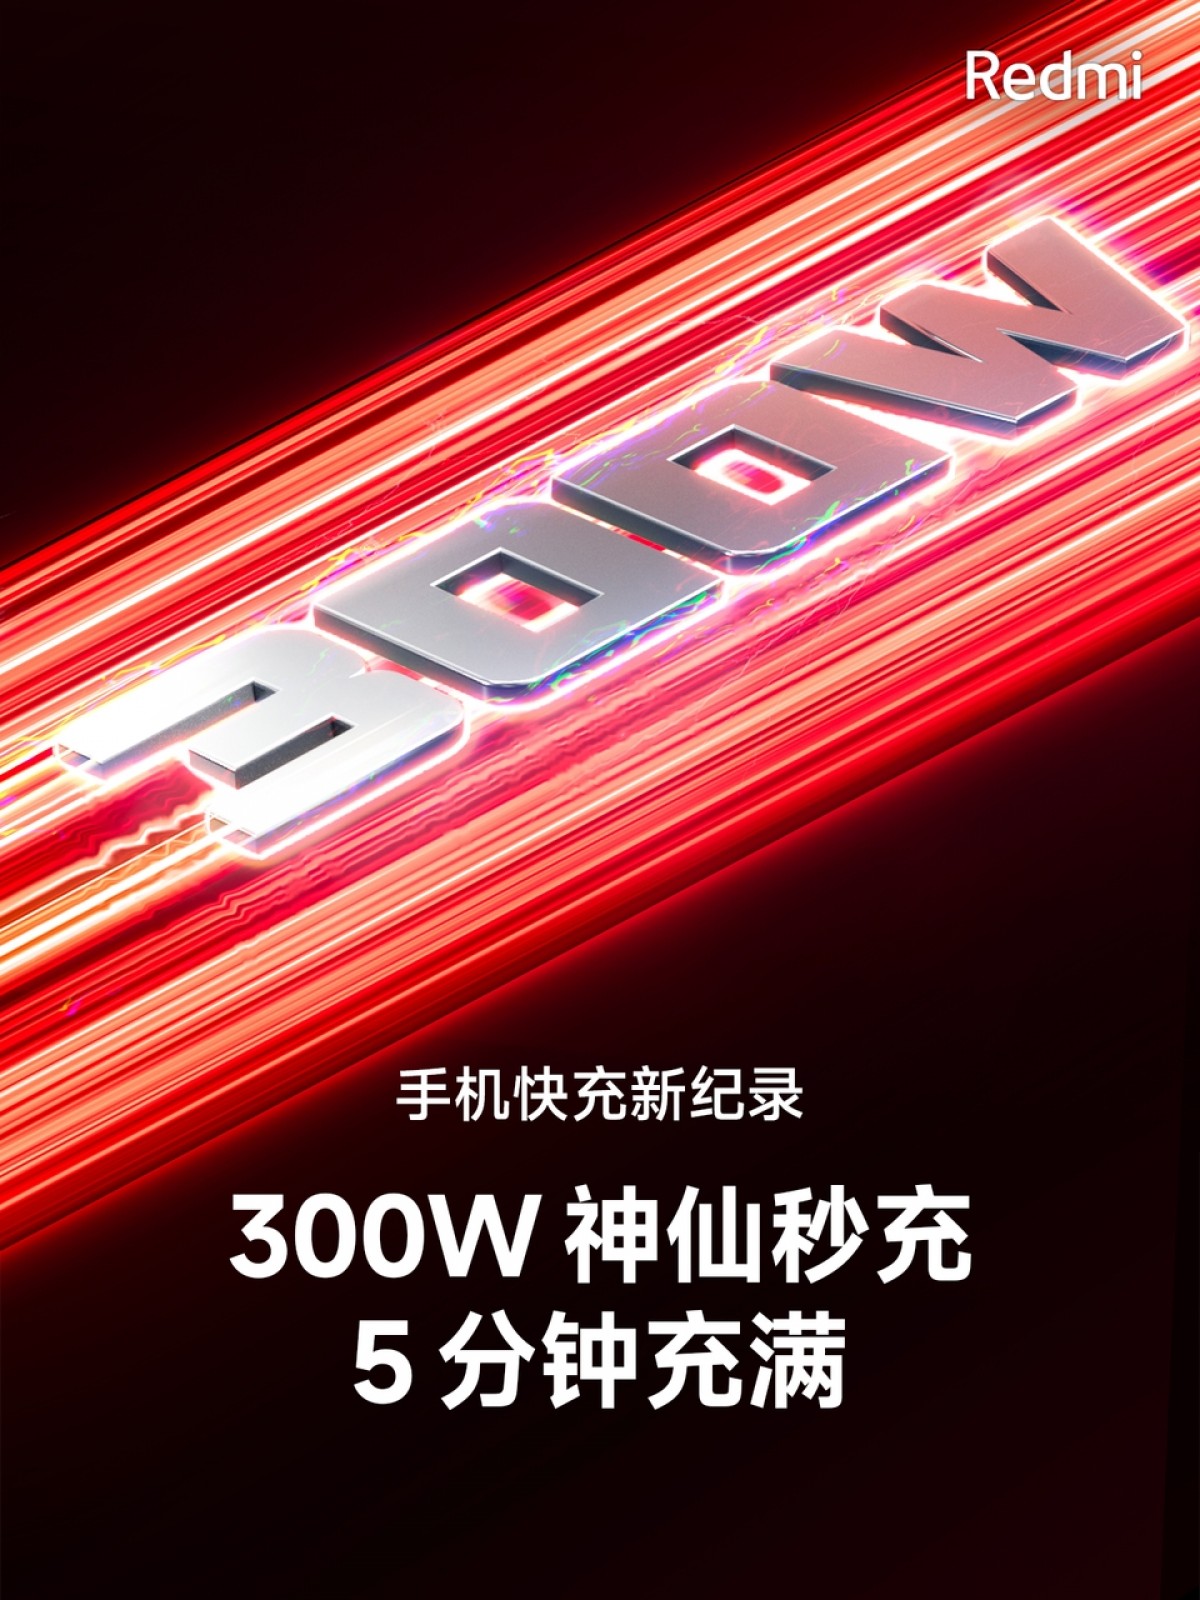 Redmi Umumkan Teknologi 300W Fast Charging